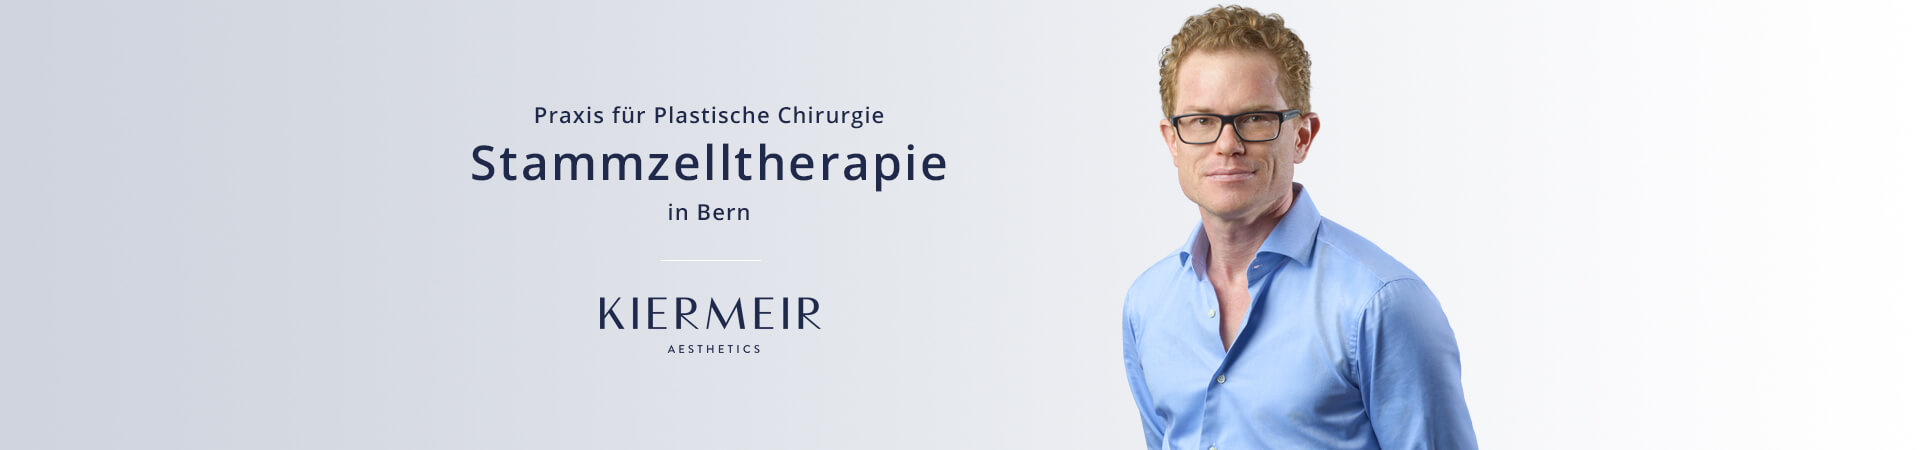 Dr. Kiermeir Stammzellentherapie in Bern 